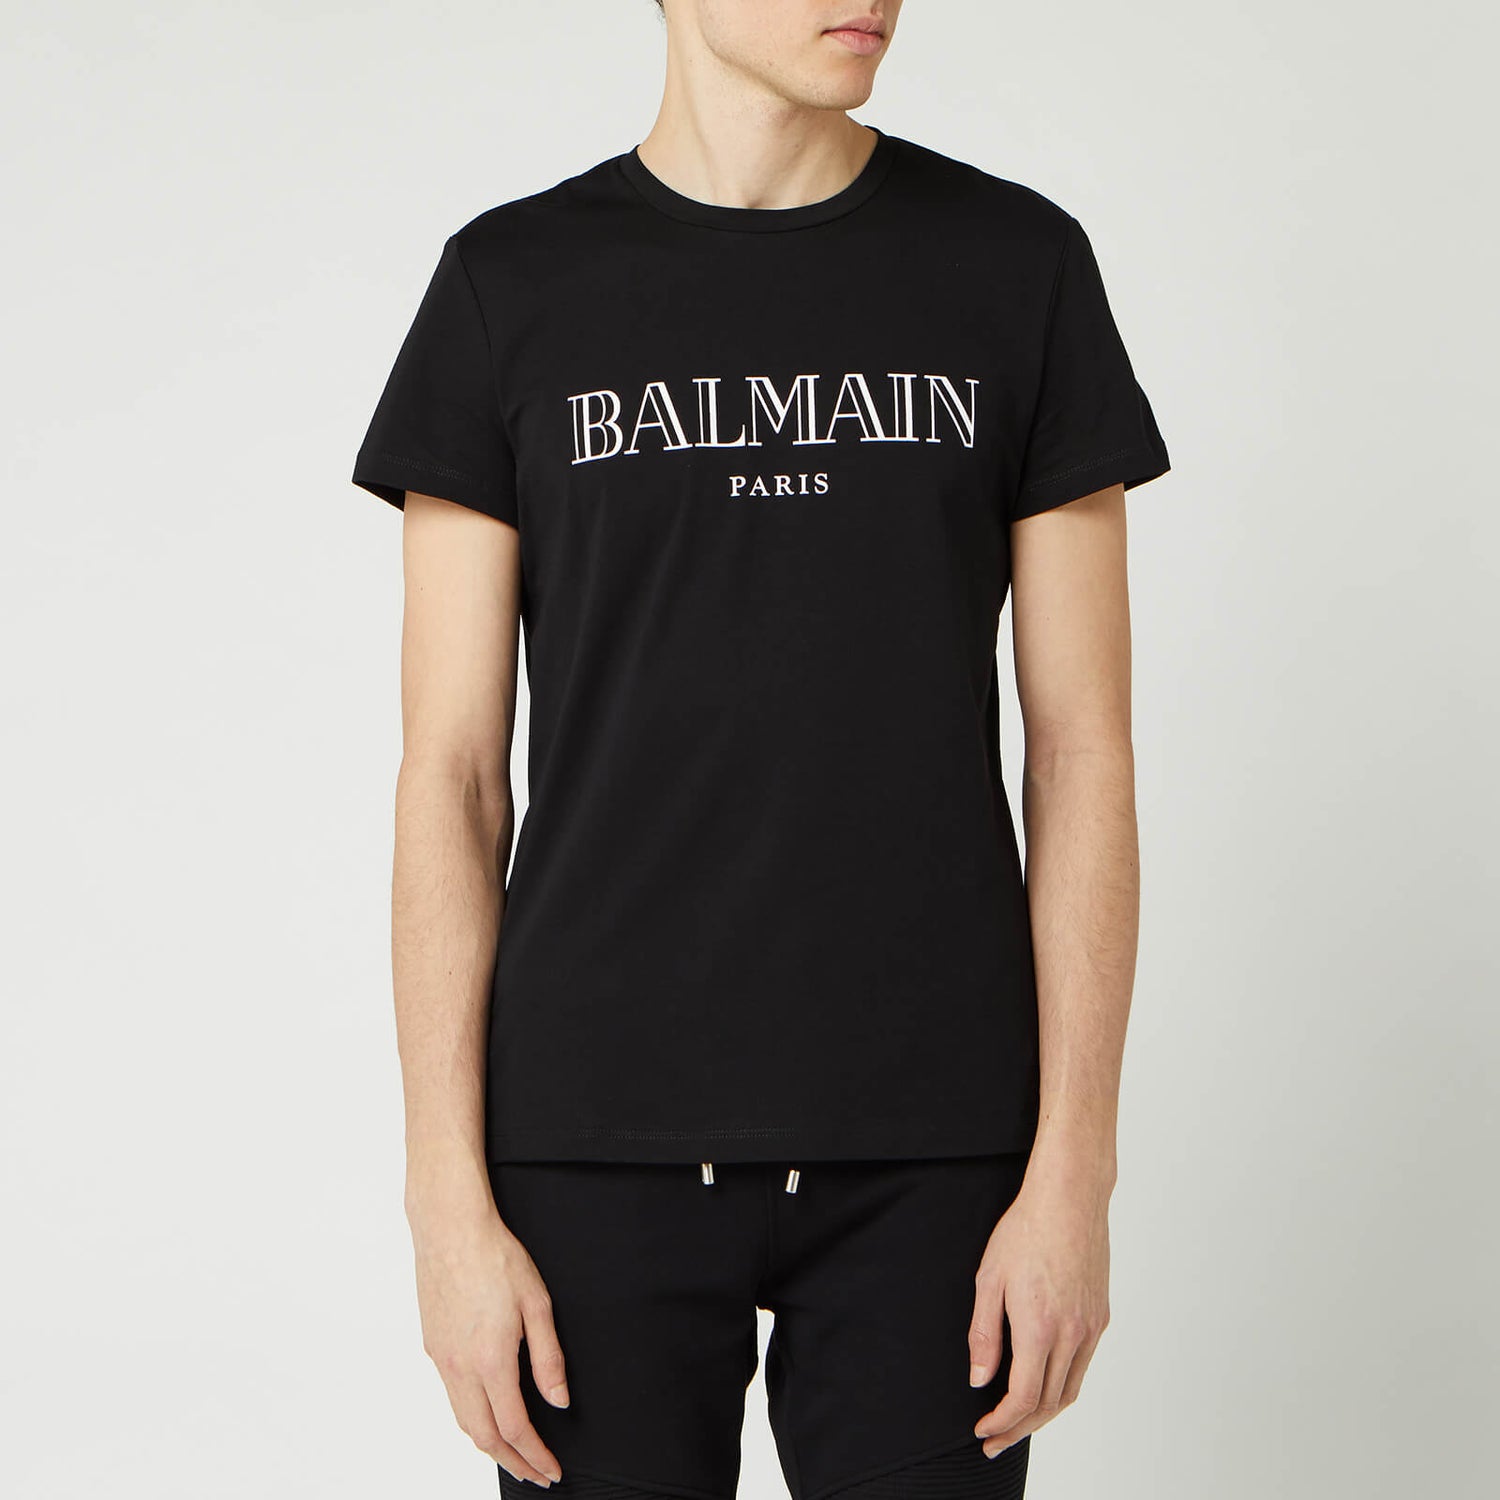 Balmain Men's Paris T-Shirt - Noir - Free UK Delivery Available